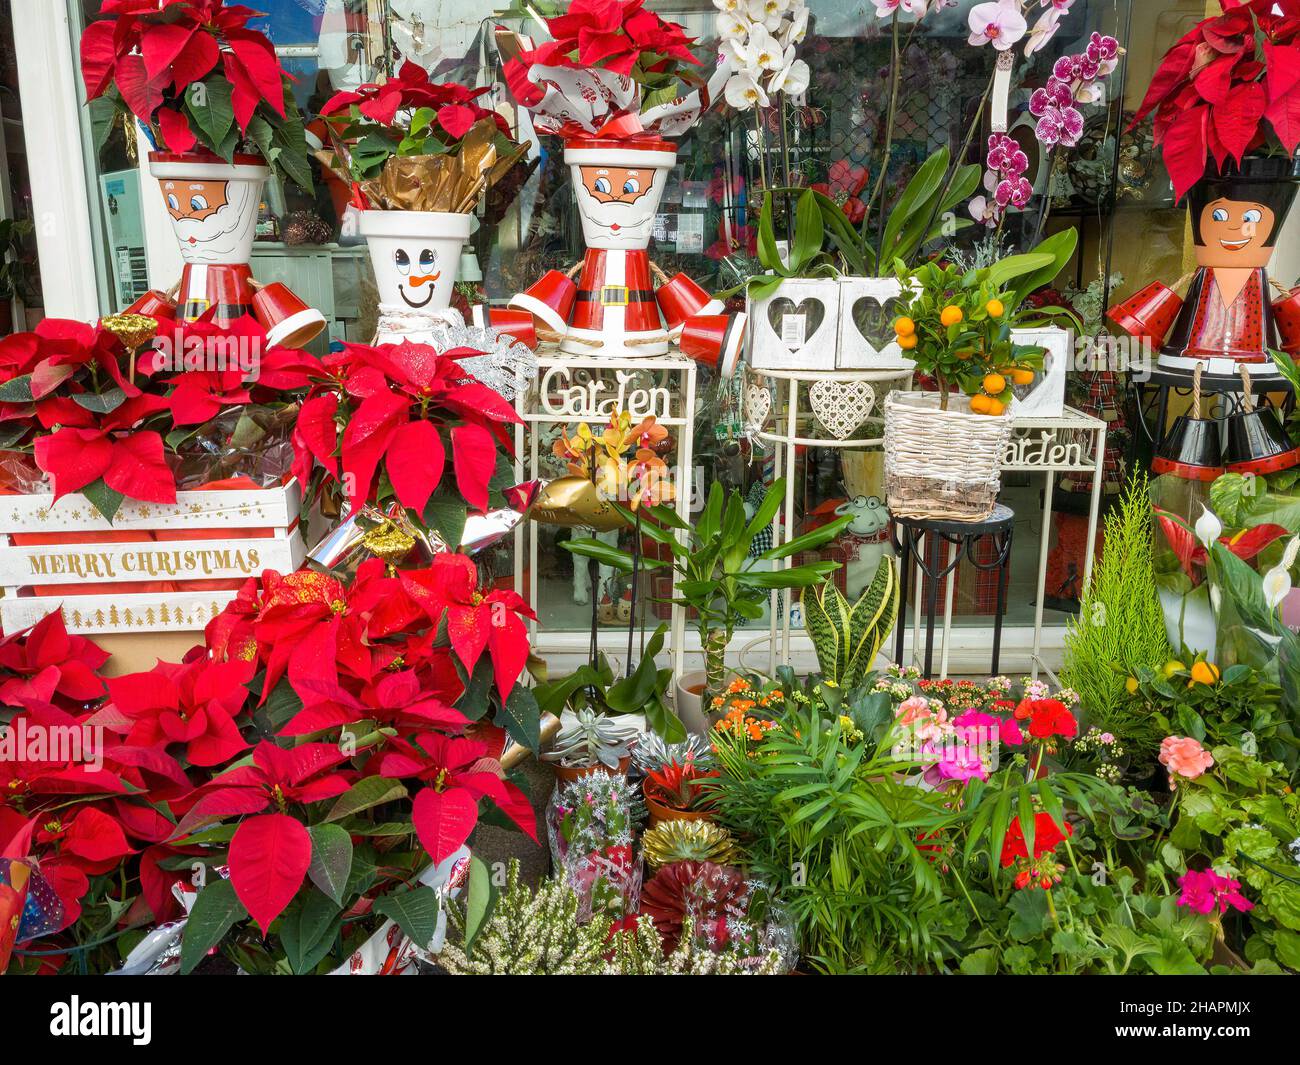 Plantes et fleurs dans des pots décorés de motifs de Noël Banque D'Images